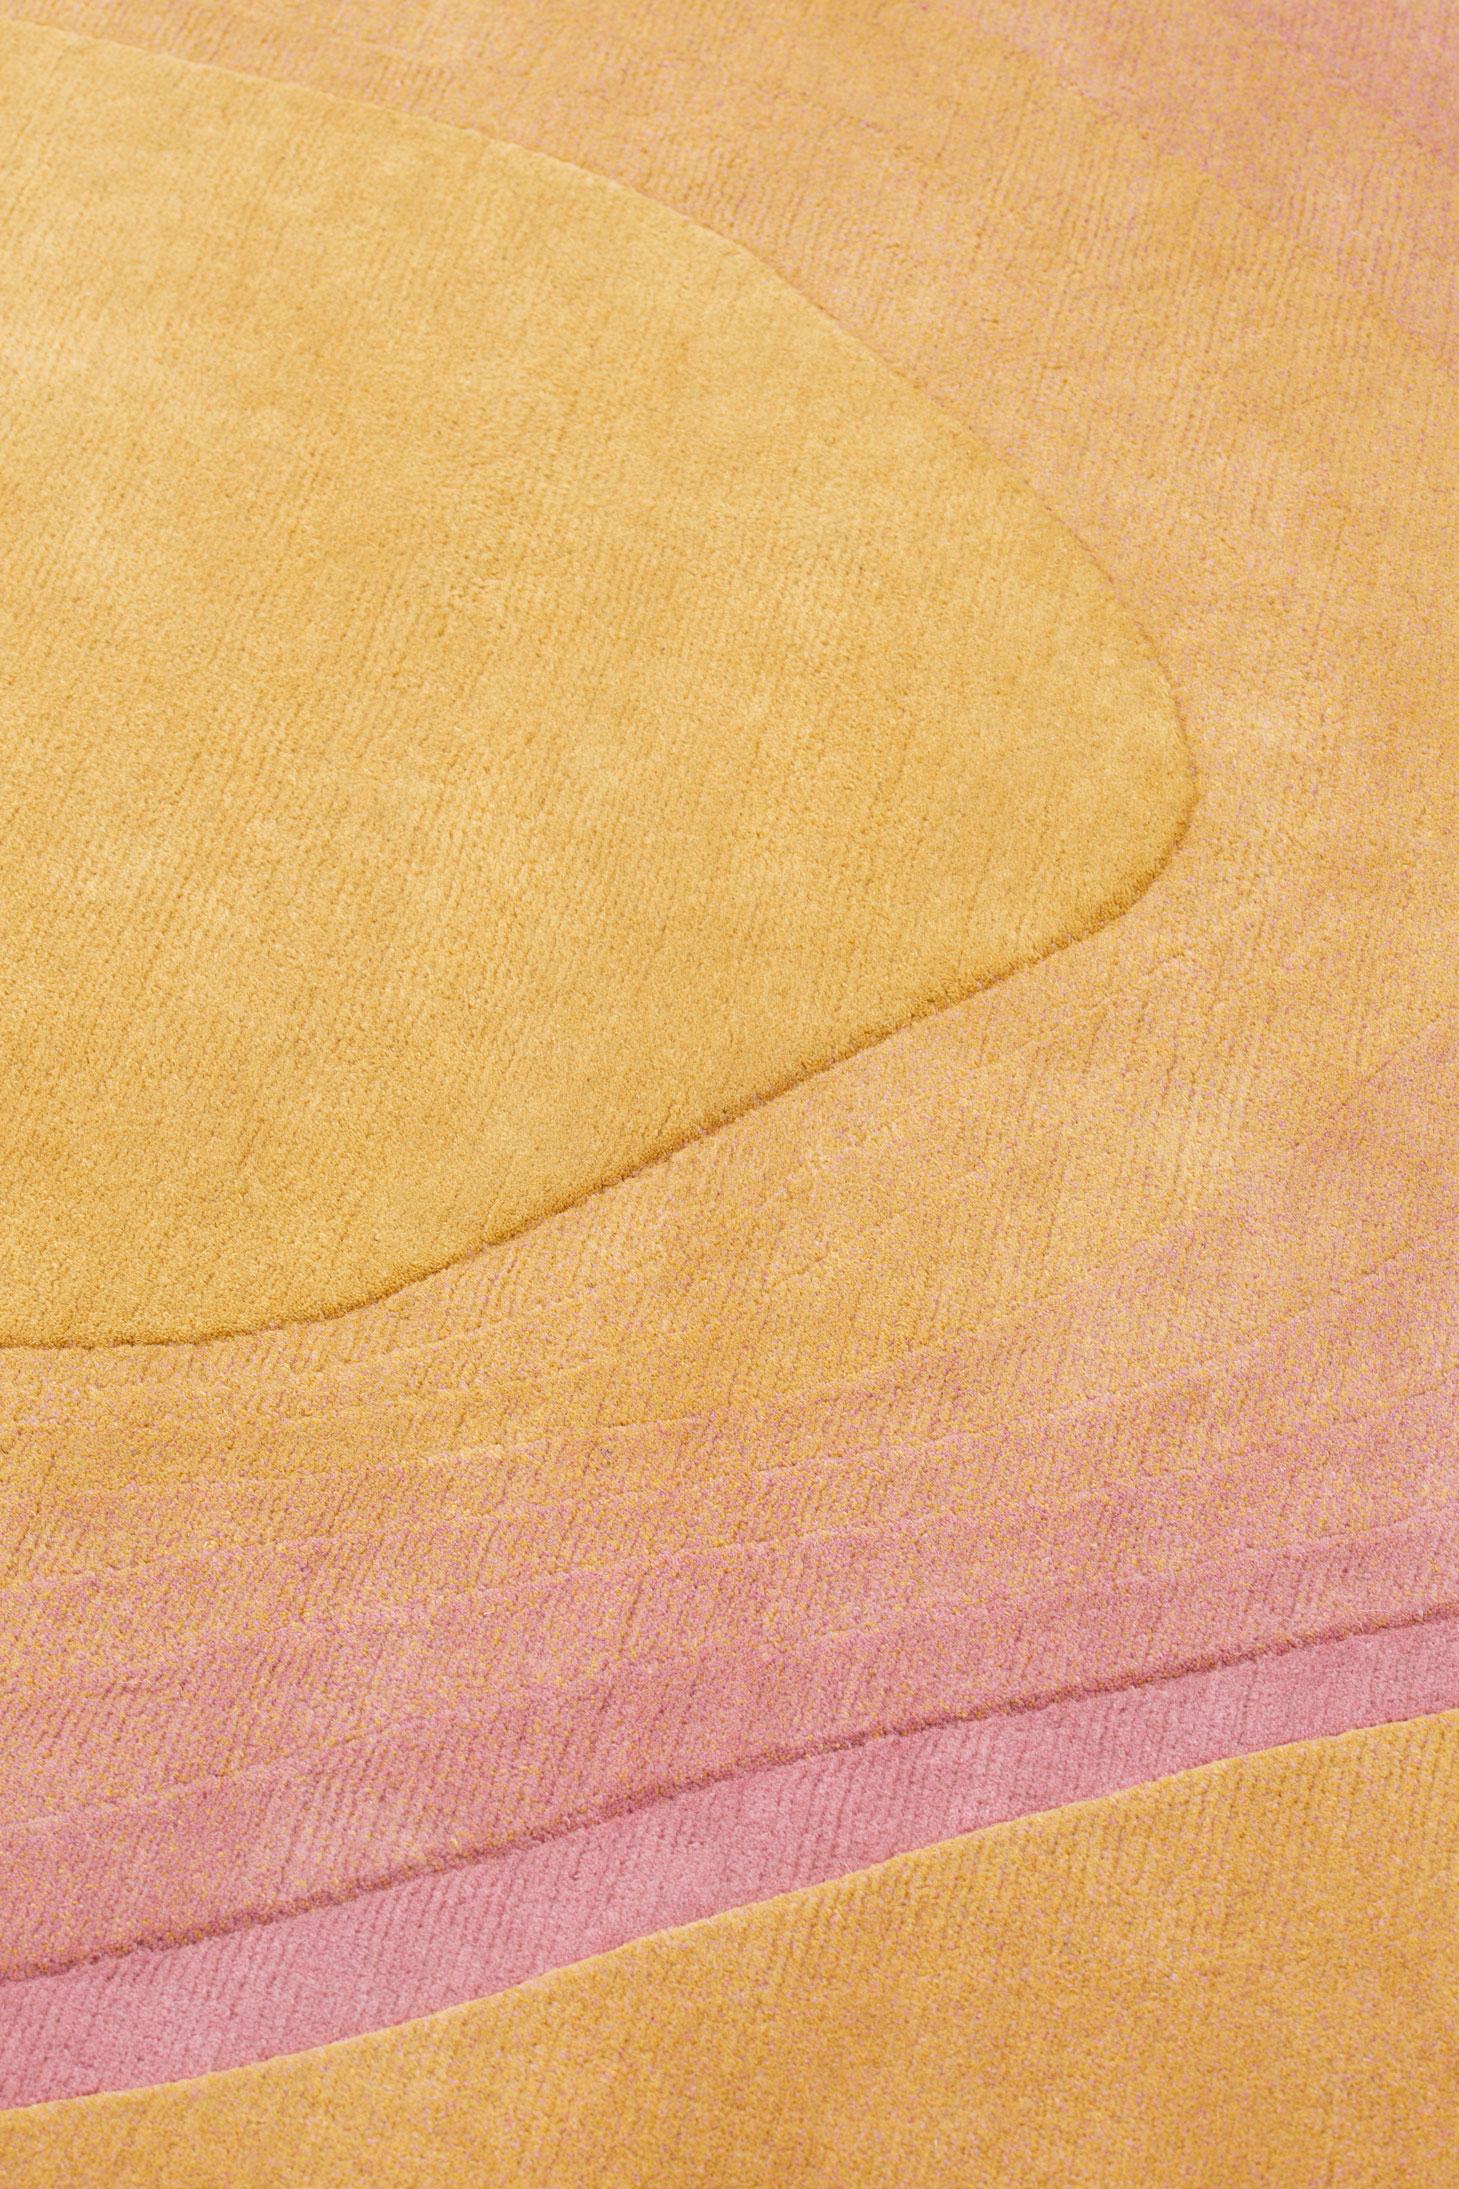 XXIe siècle et contemporain cc-tapis Chroma Radiate Yellow Pink Round Rug by Germans Ermičs - EN STOCK en vente